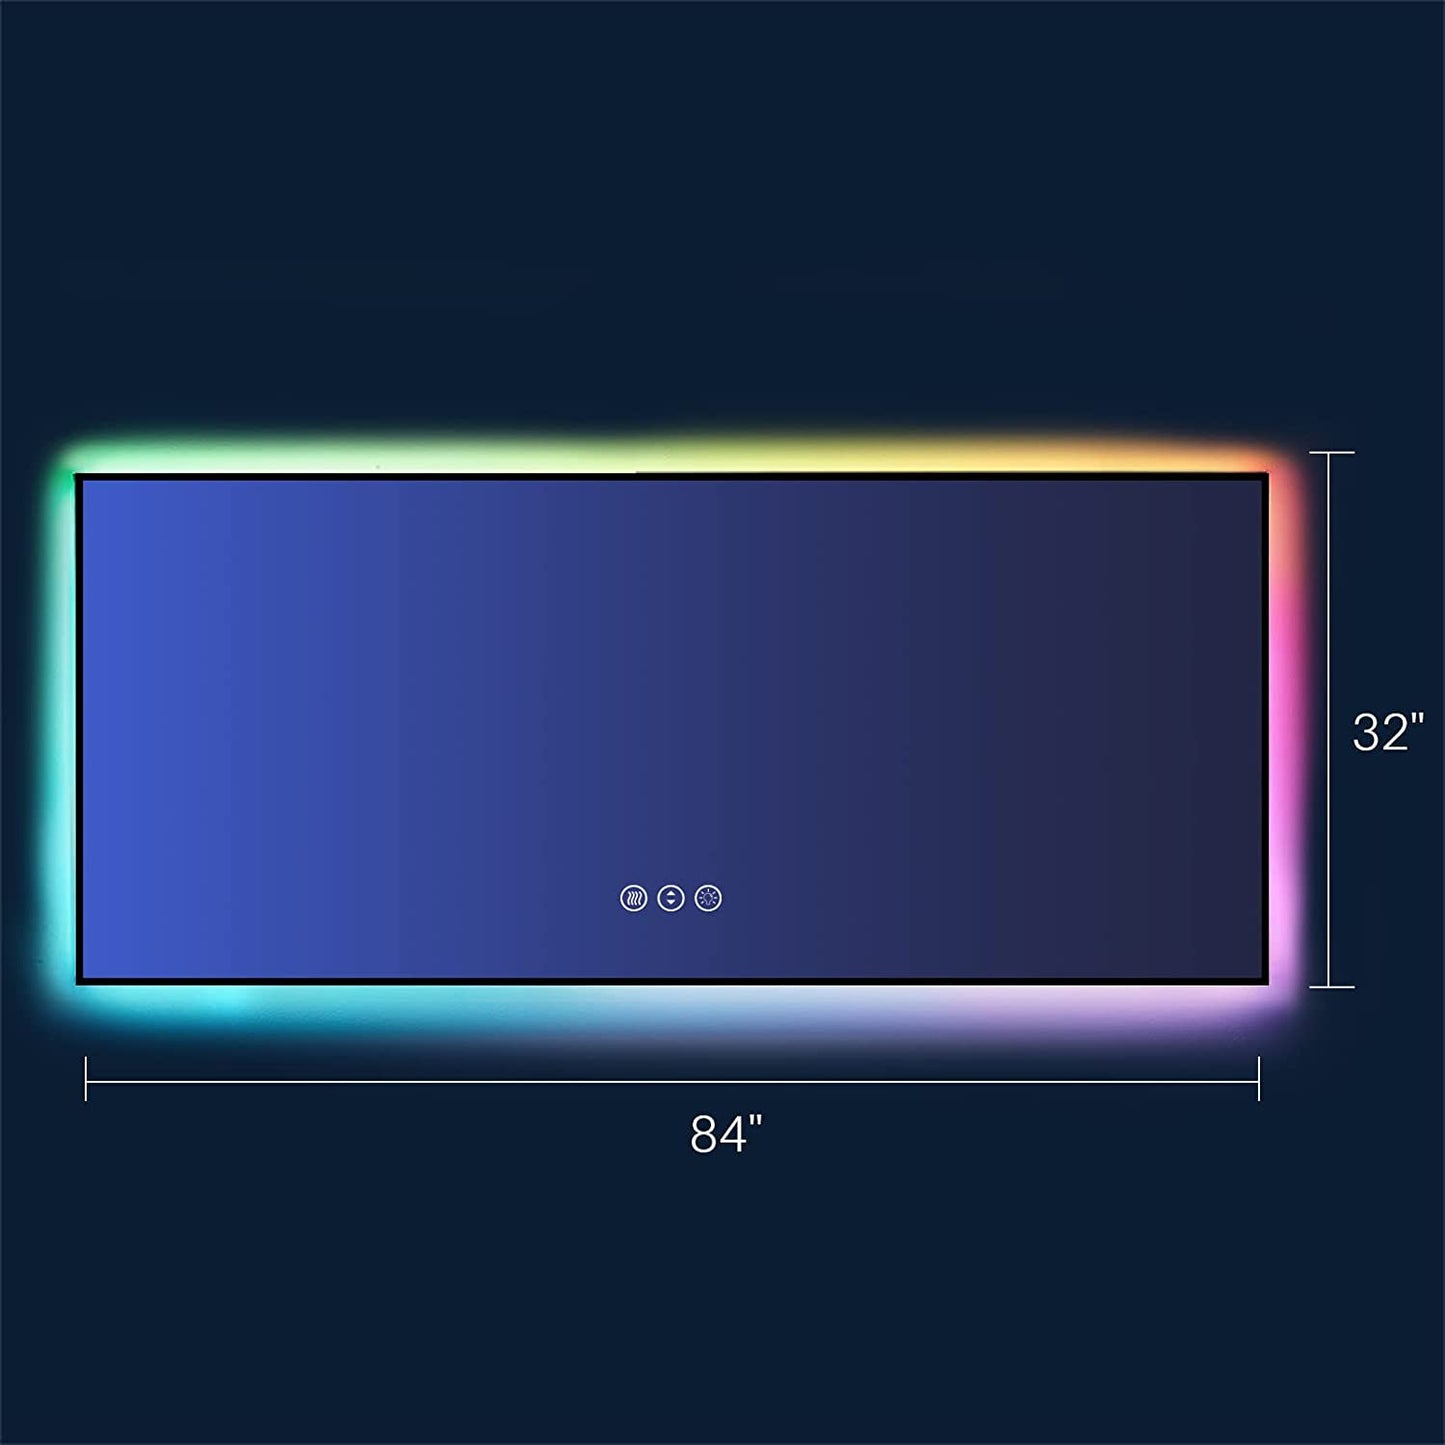 Amorho LED Bathroom Mirror with RGB Backlit, 84"x32"